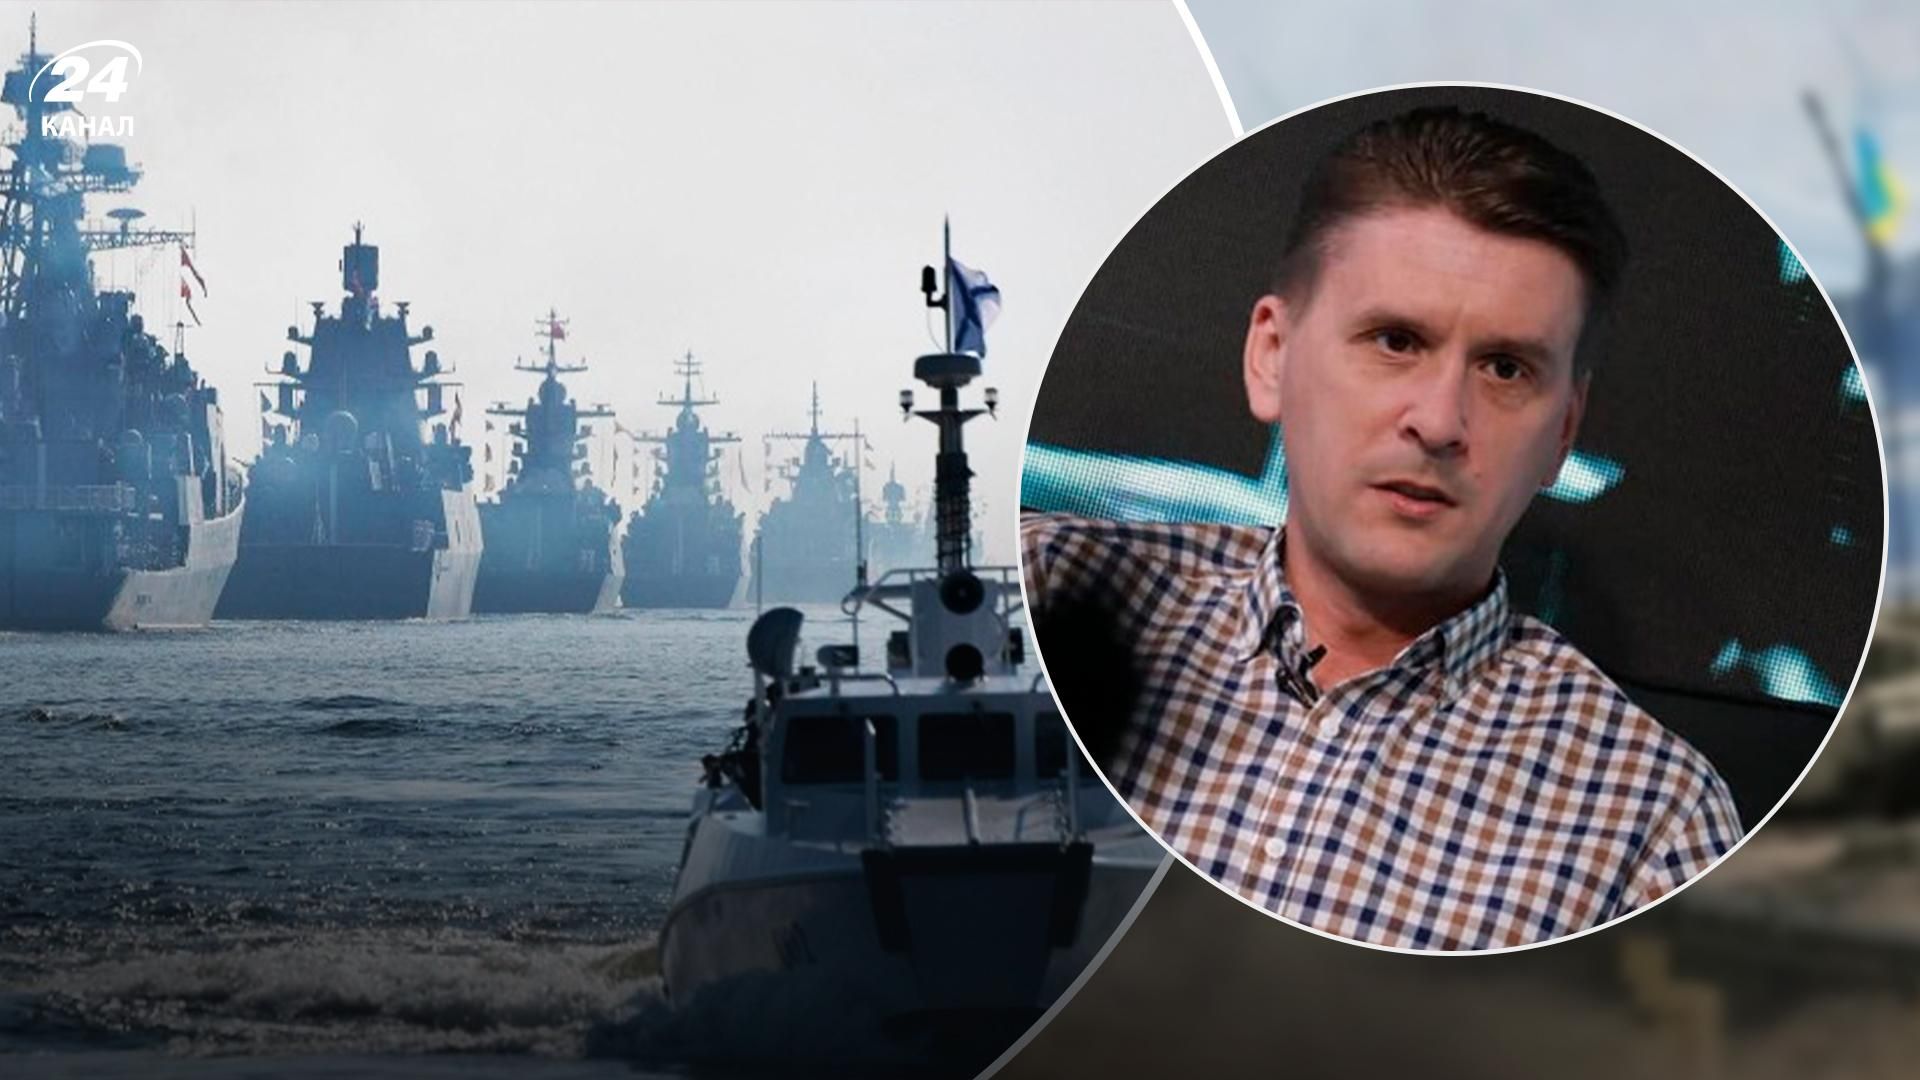 ВСУ за полгода превратили черноморский флот россии во флотилию, – военный обозреватель